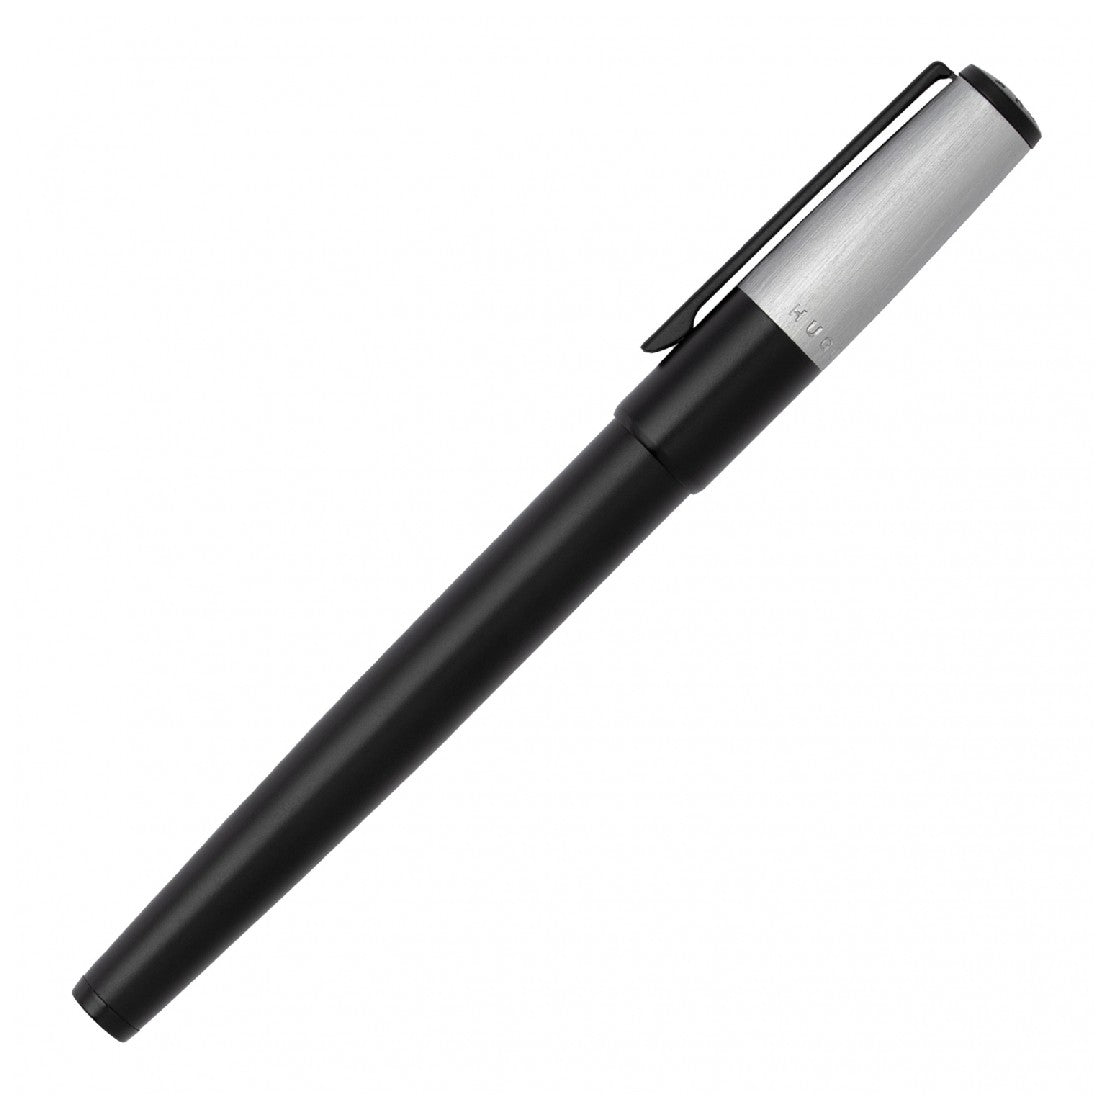 Hugo Boss Black and Chrome Pen - HBPEN-0013